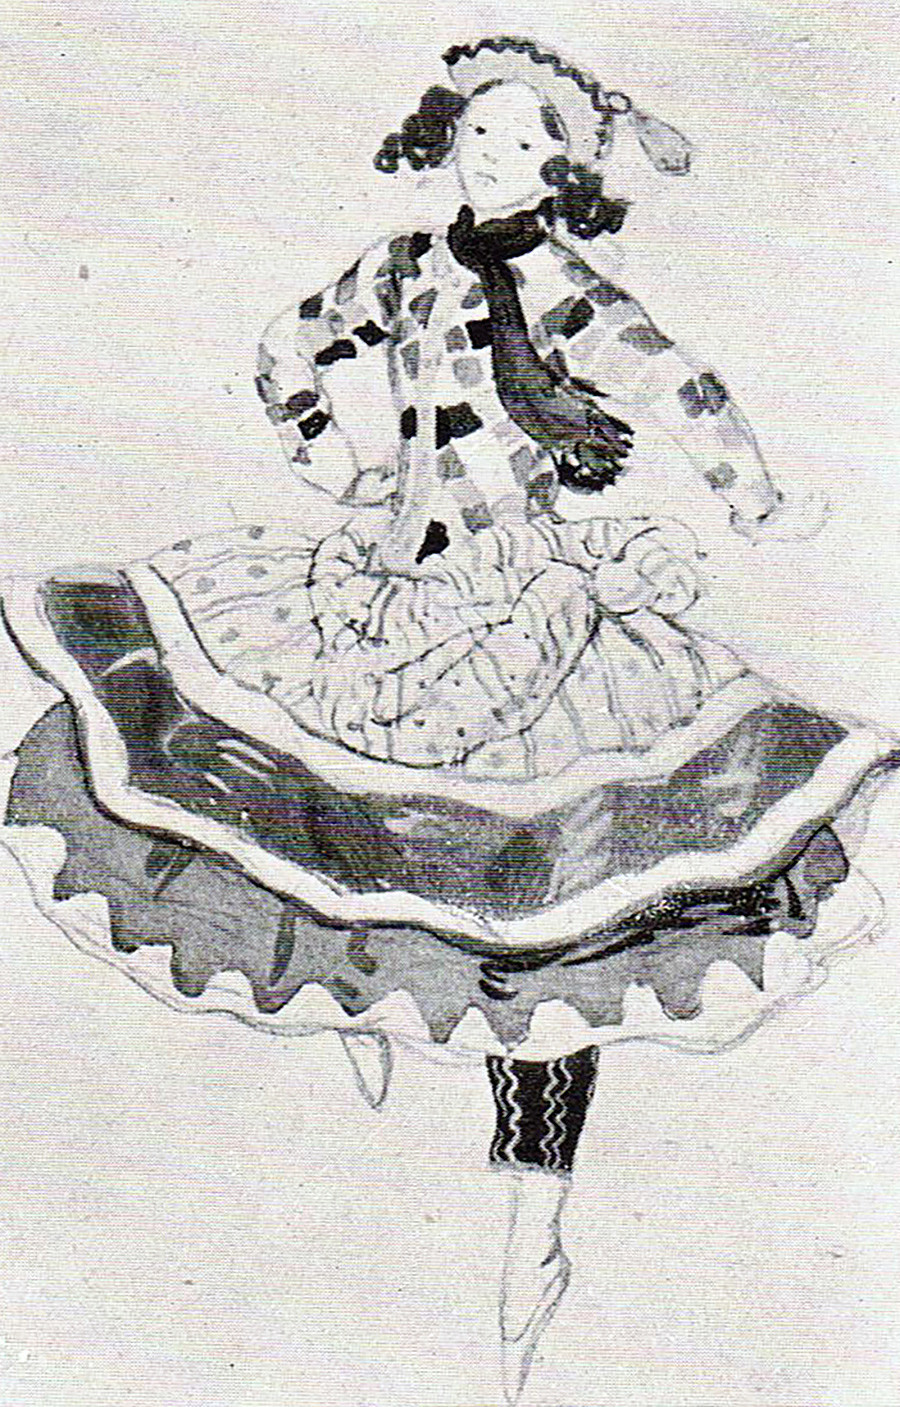 Alexandre Benois. Esquisse pour le ballet Petrouchka, 1911